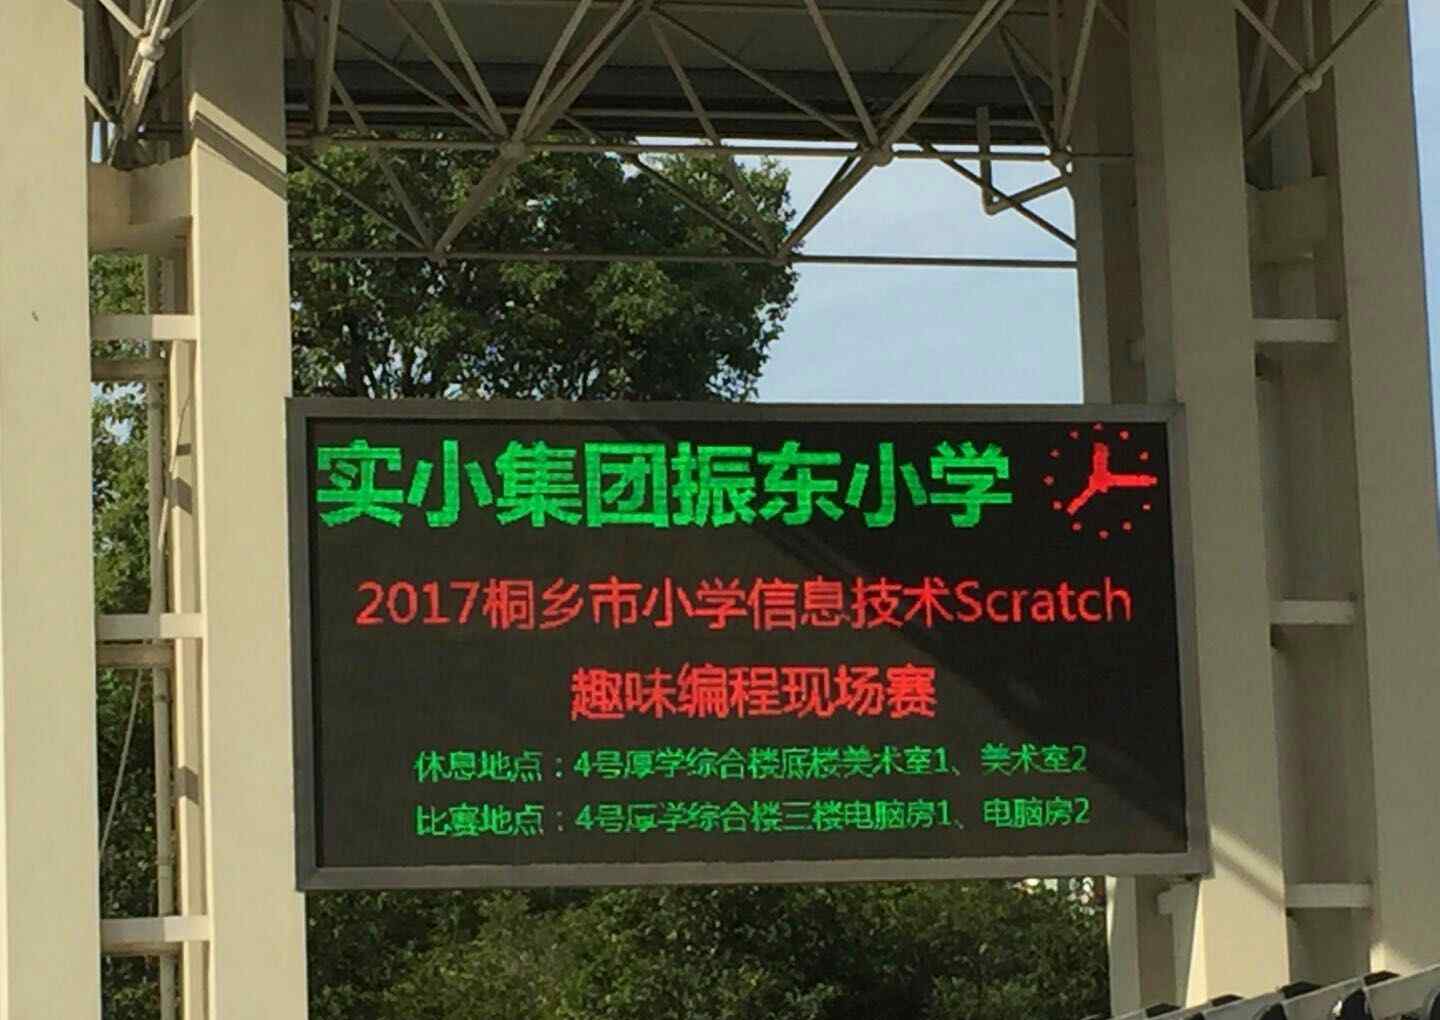 scratch创意小游戏 Scratch编程 创意无限 ——桐乡市举办2017小学生Scratch趣味编程现场赛